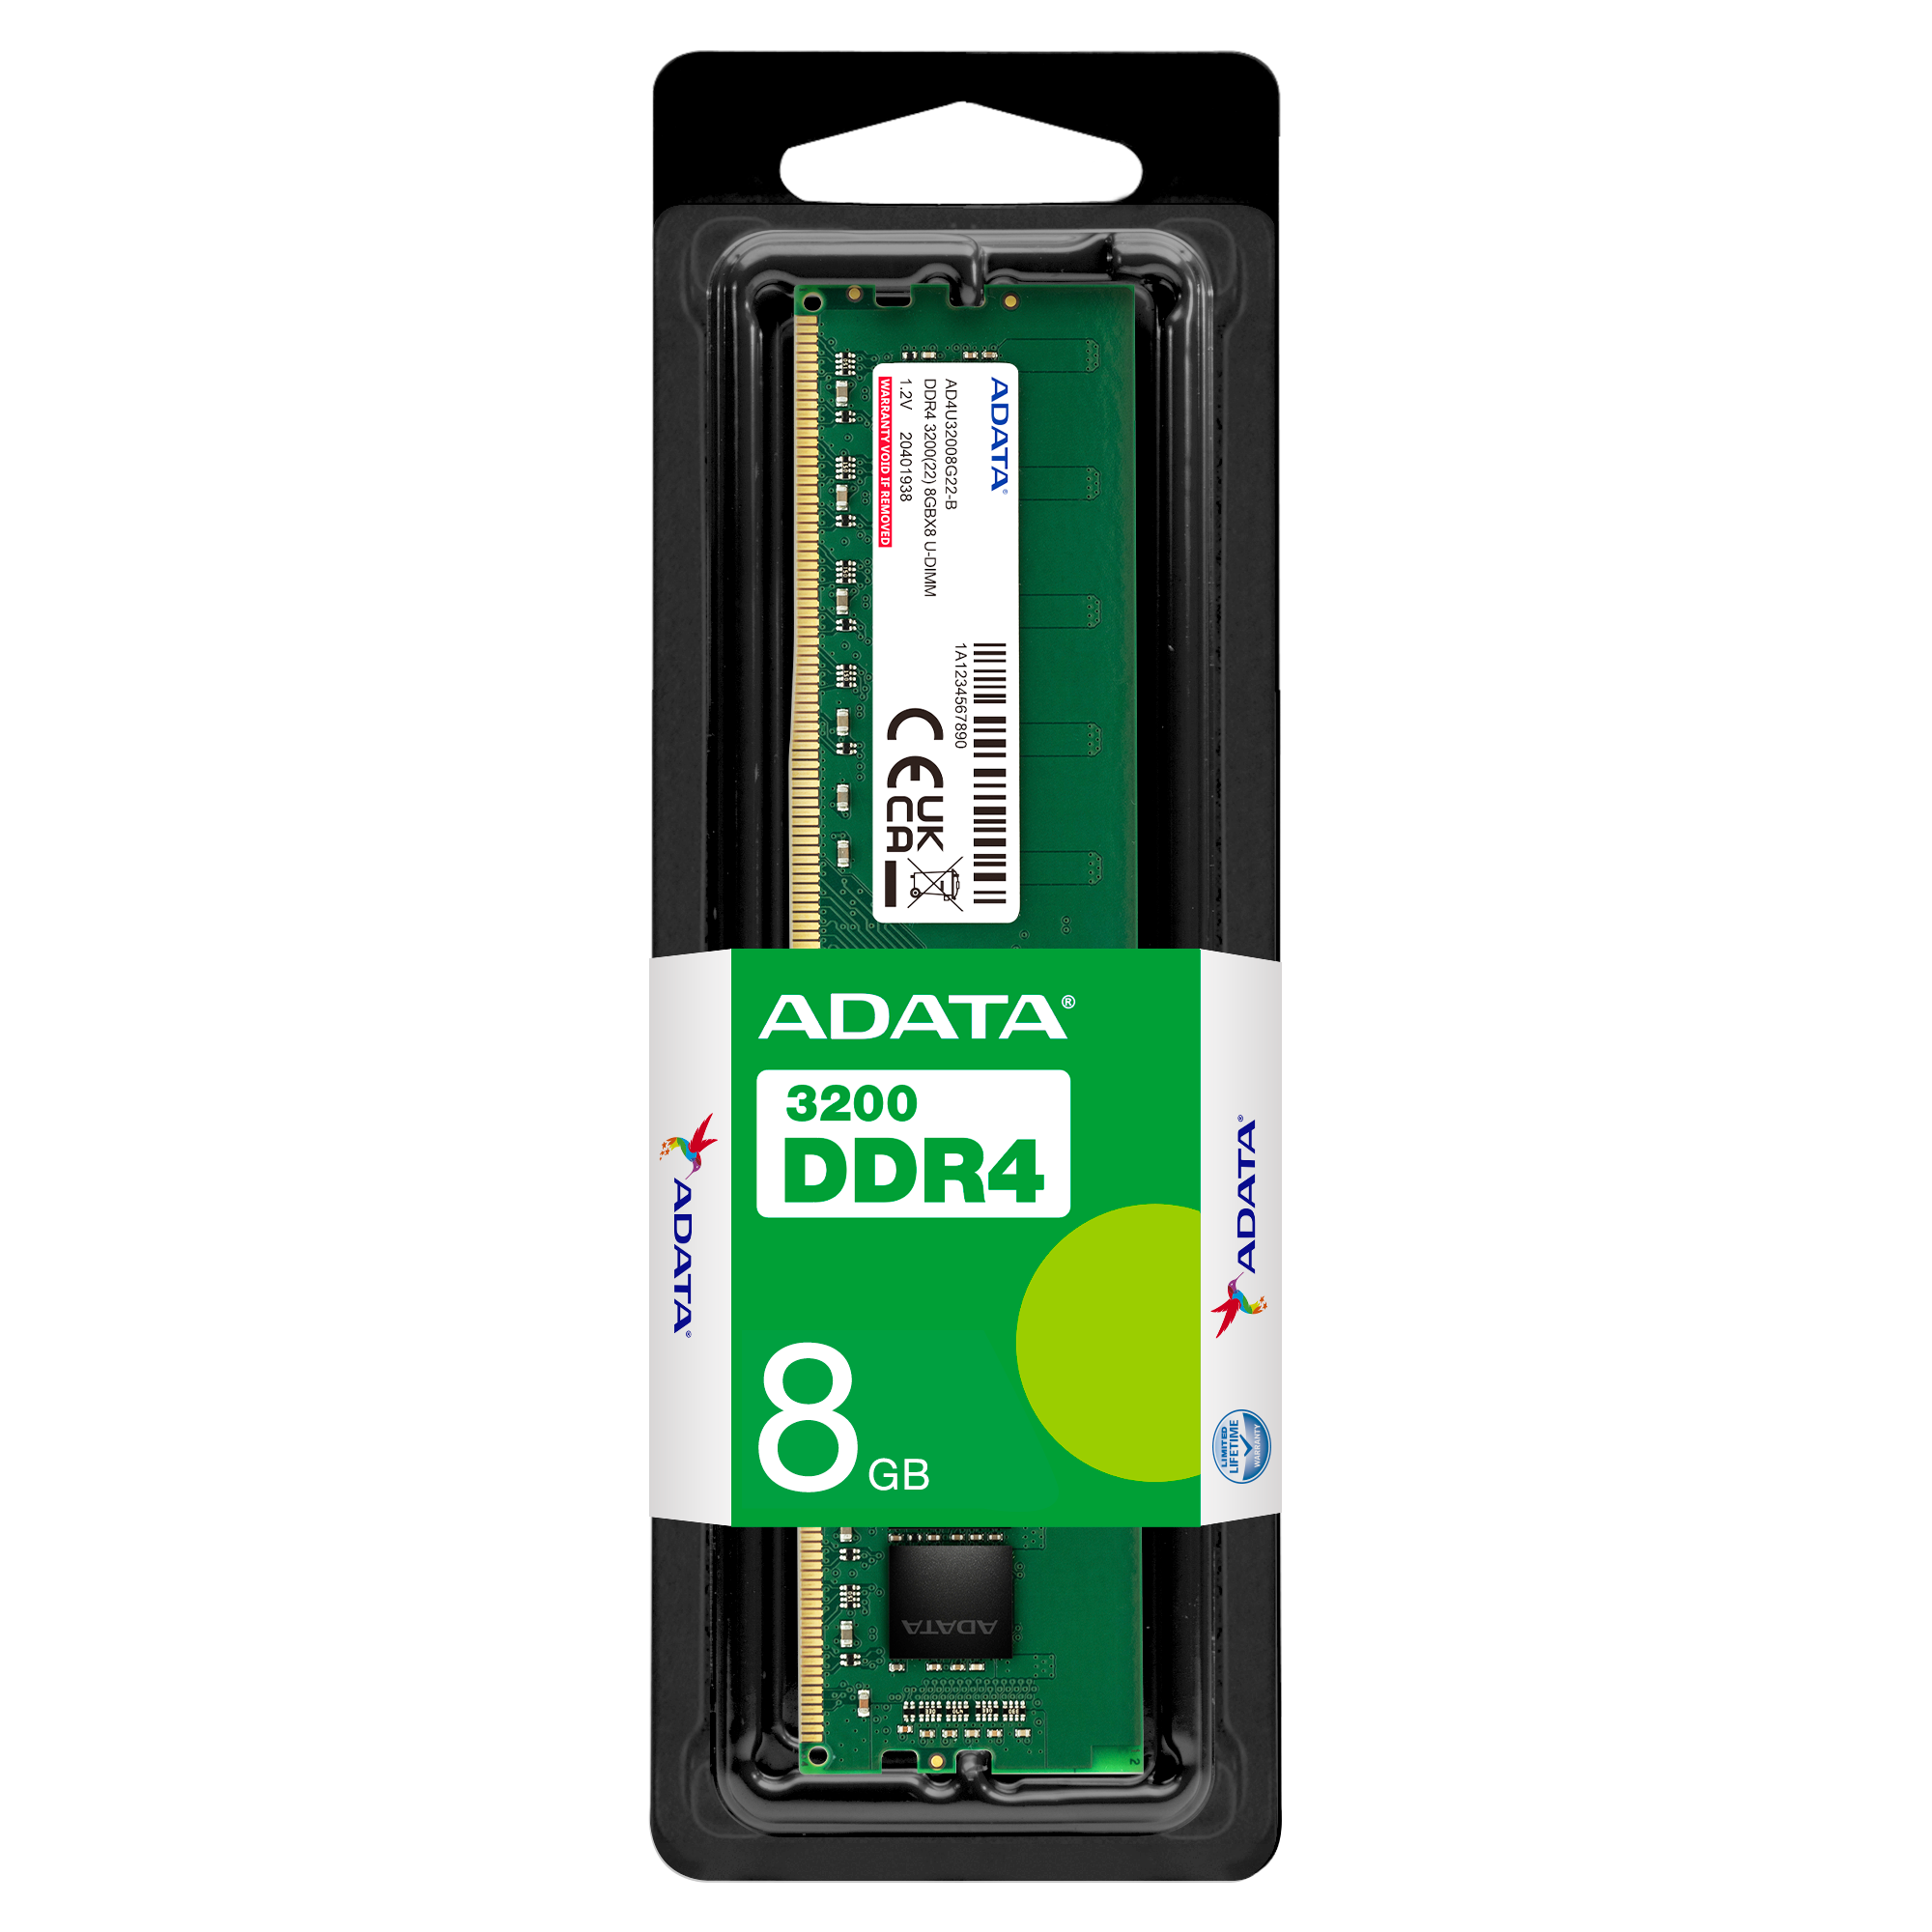 ADATA Premier (DDR4 | 3200MHz) 8GB